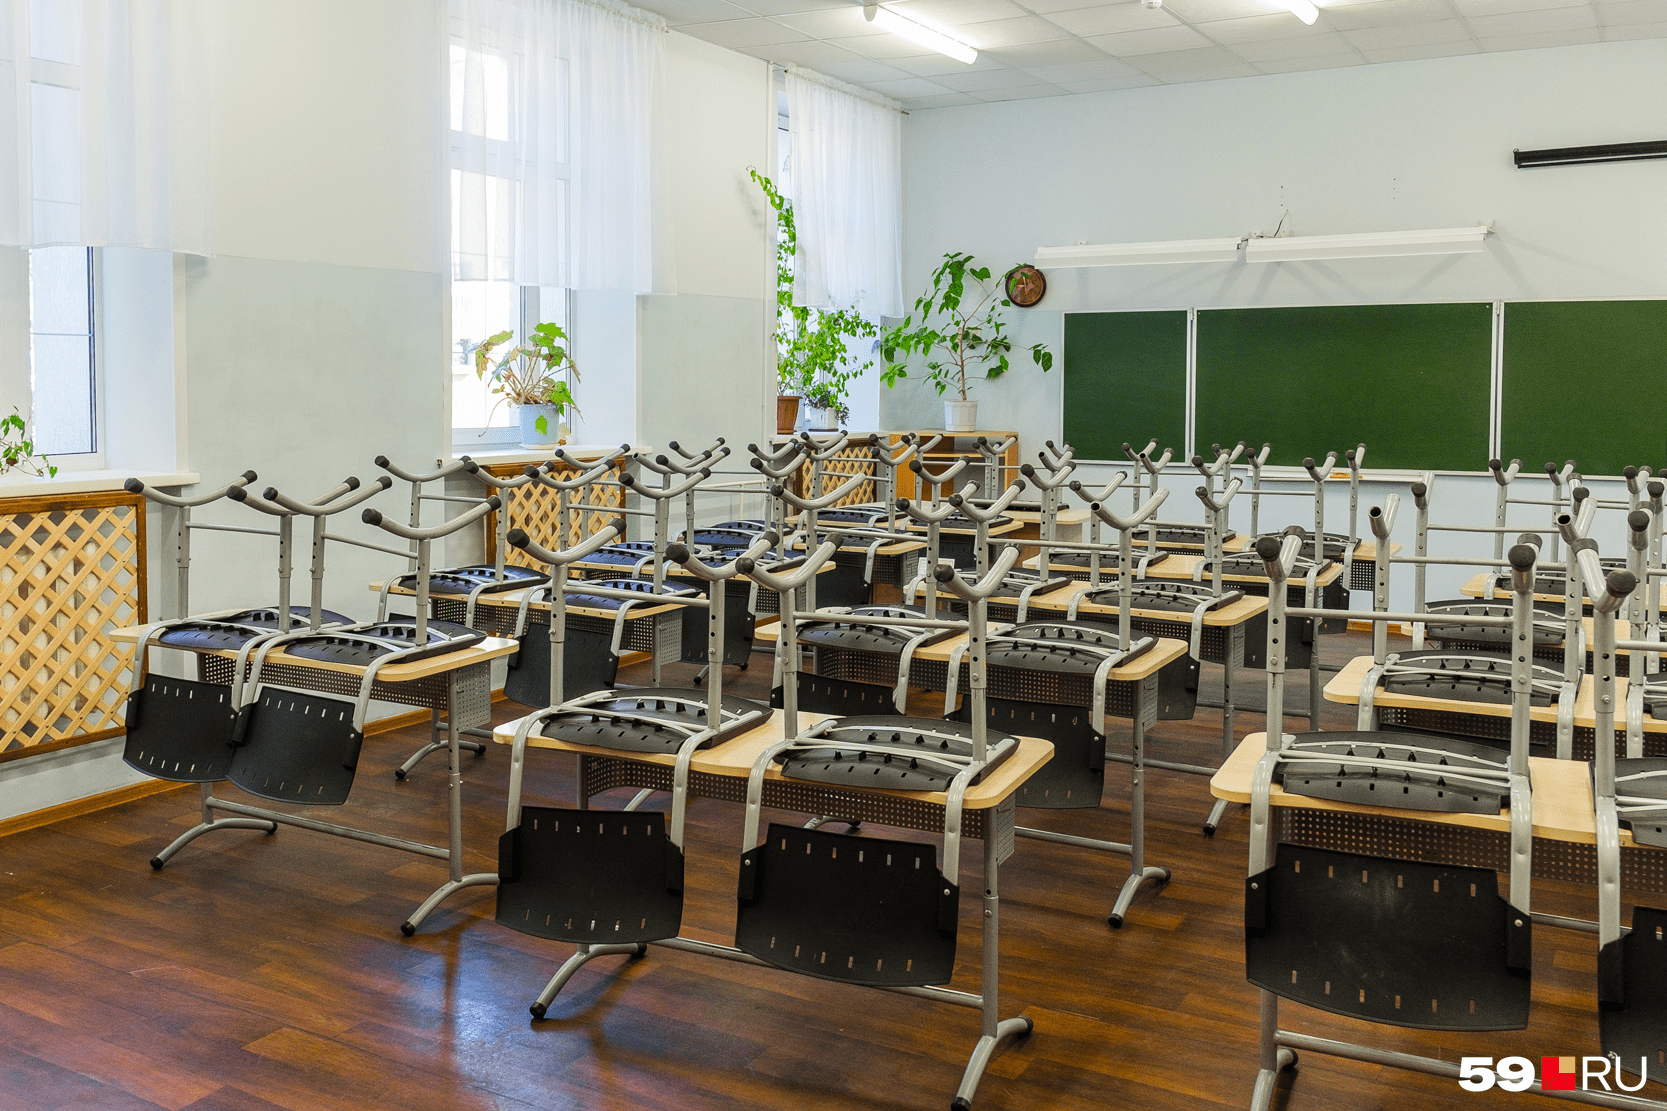 За партами школьники будут сидеть по одному, если позволит количество детей в классе